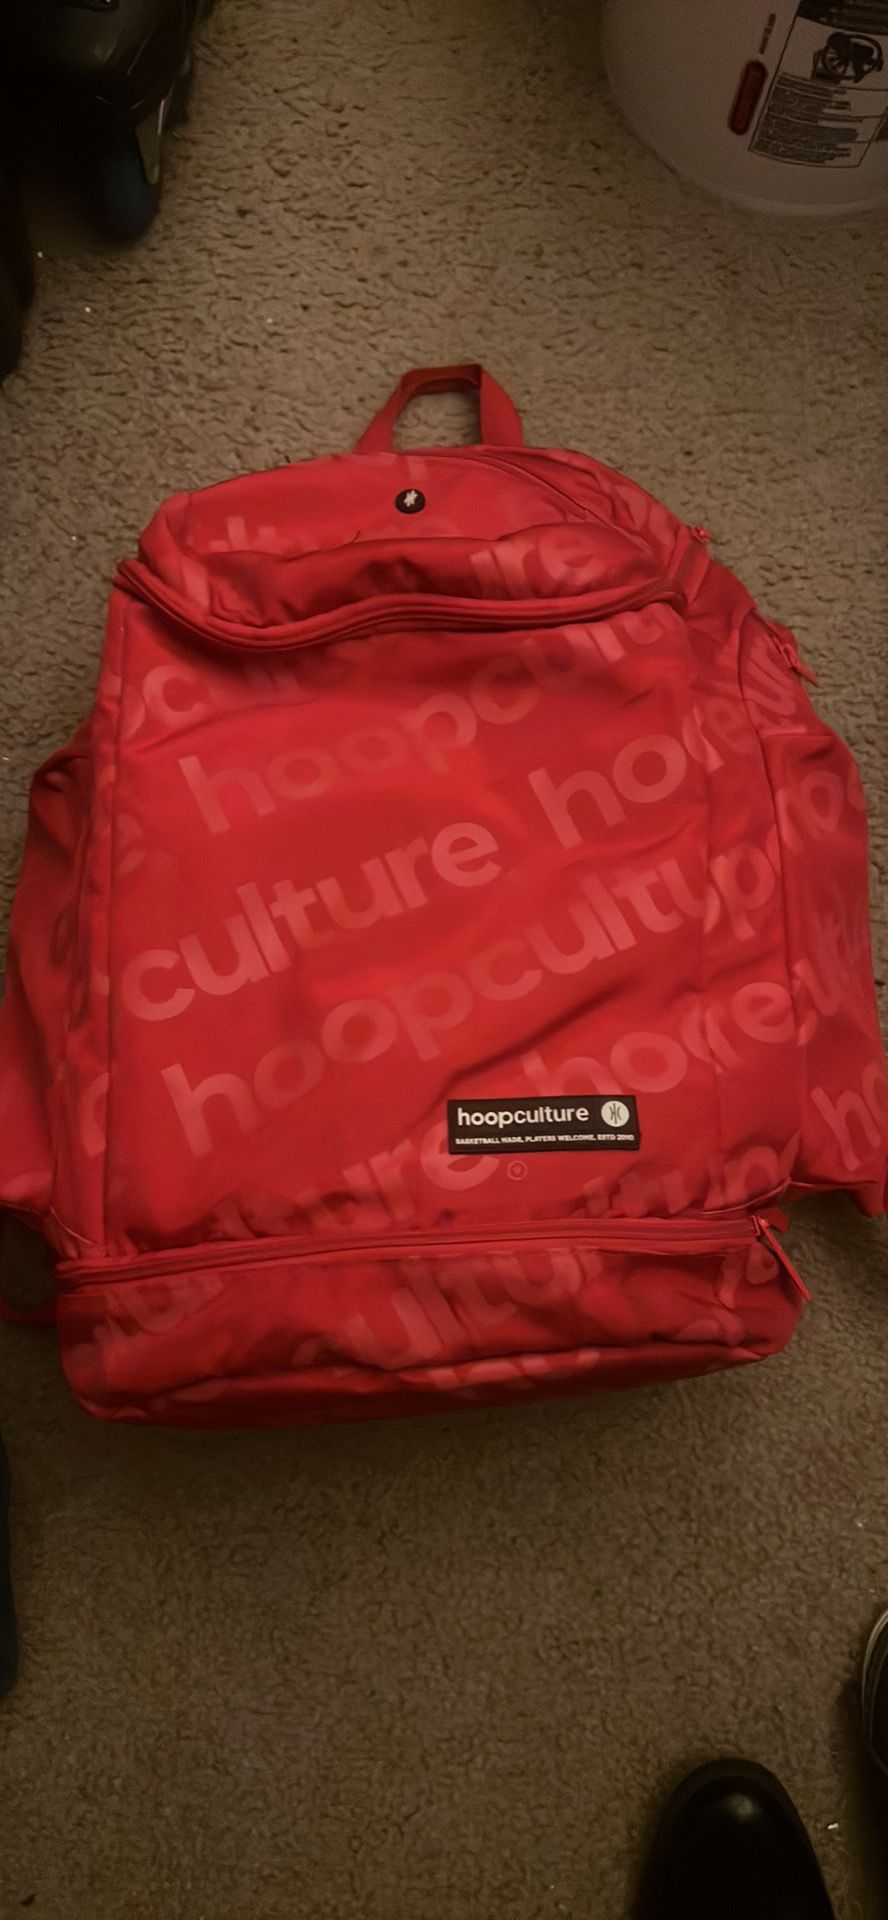 Hoop Culture Backpack